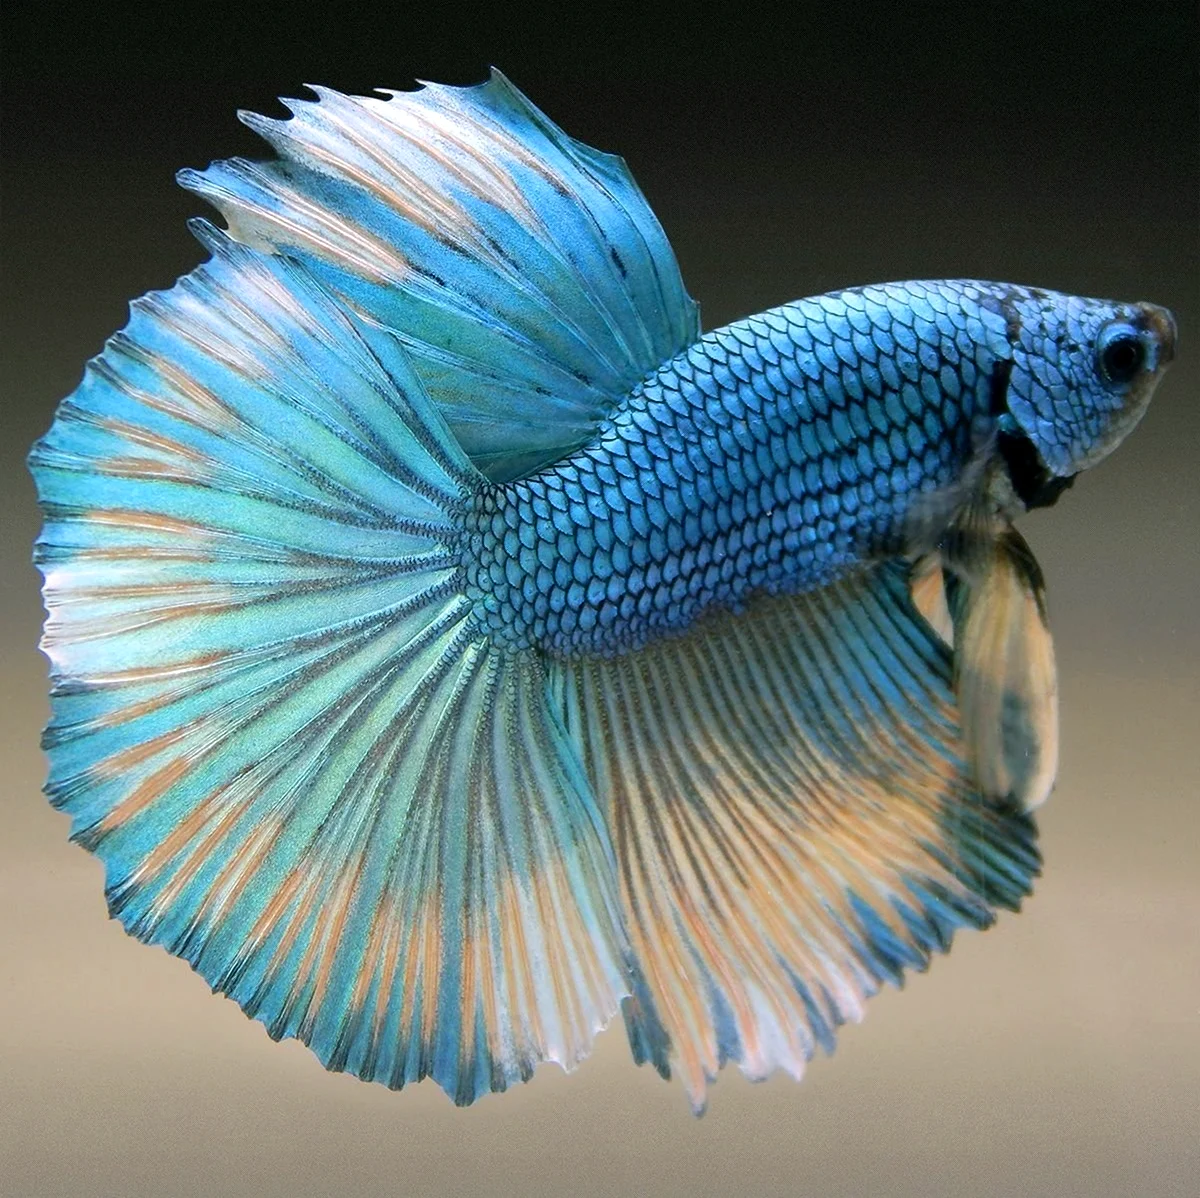 Аквариумная рыбка голубой петушок. Красивое животное